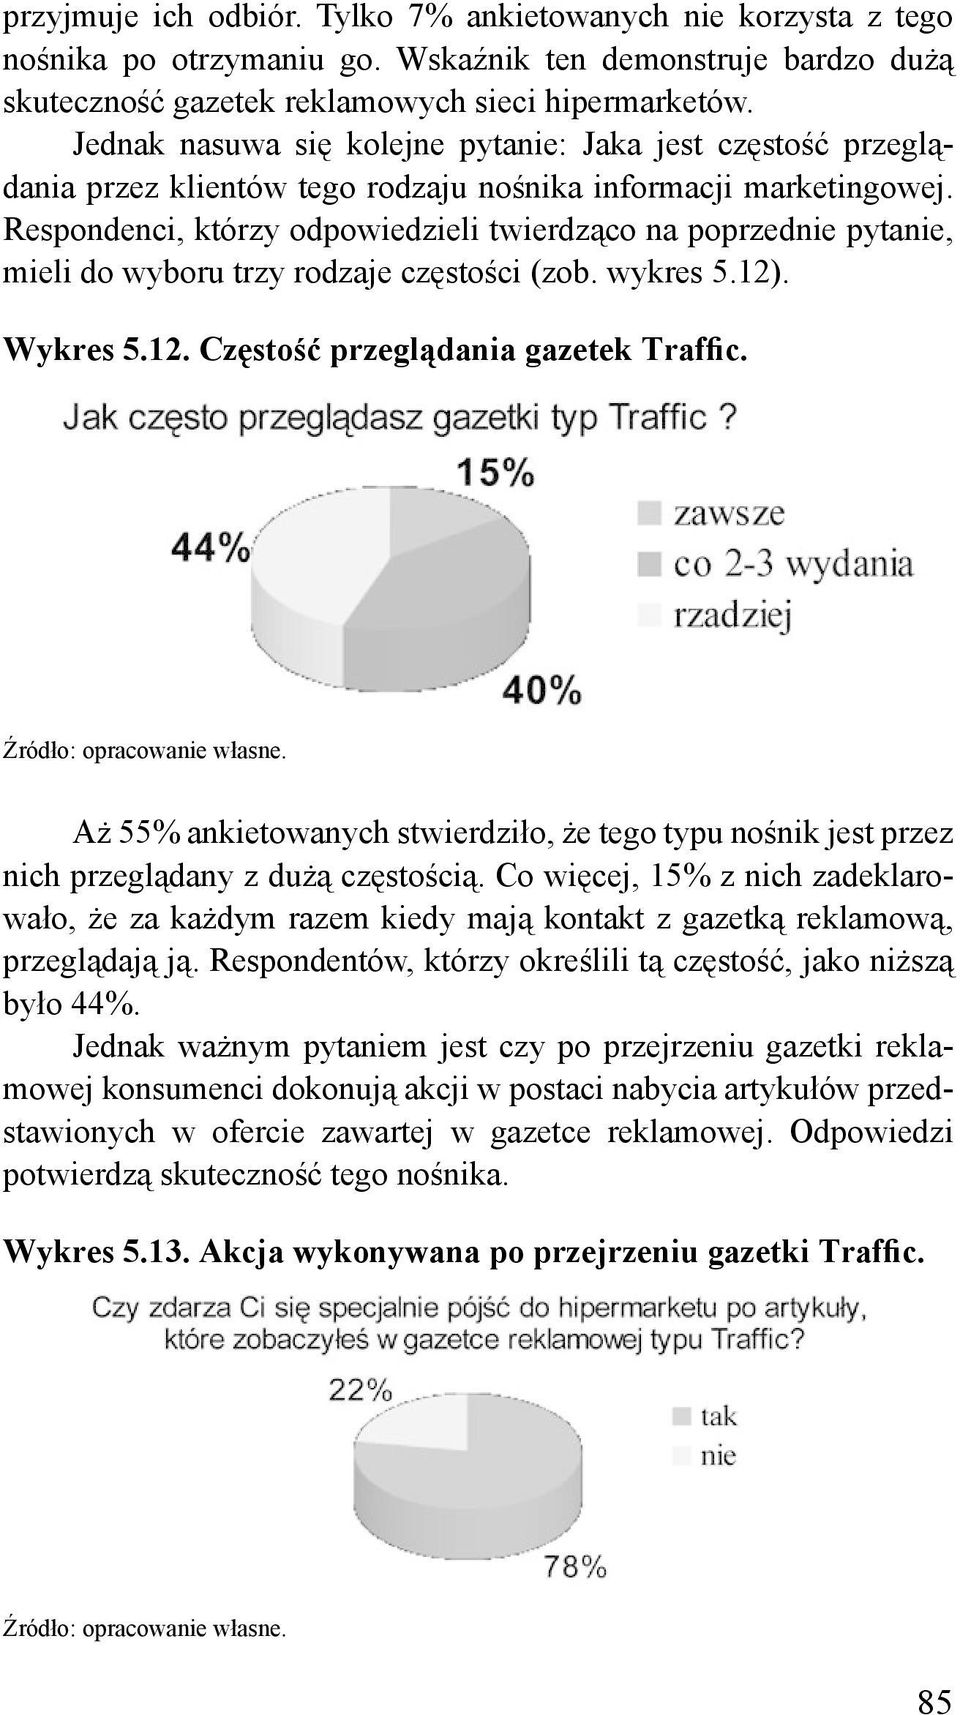 Respondenci, którzy odpowiedzieli twierdząco na poprzednie pytanie, mieli do wyboru trzy rodzaje częstości (zob. wykres 5.12). Wykres 5.12. Częstość przeglądania gazetek Traffic.